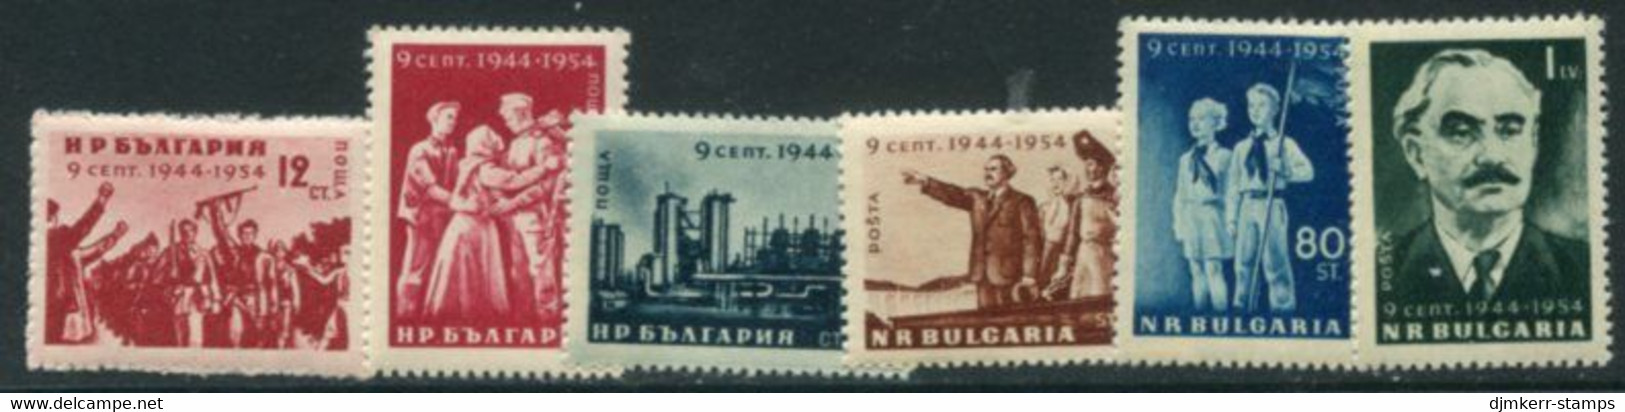 BULGARIA 1954 Liberation Anniversary MNH / ** .  Michel 921-26 - Neufs